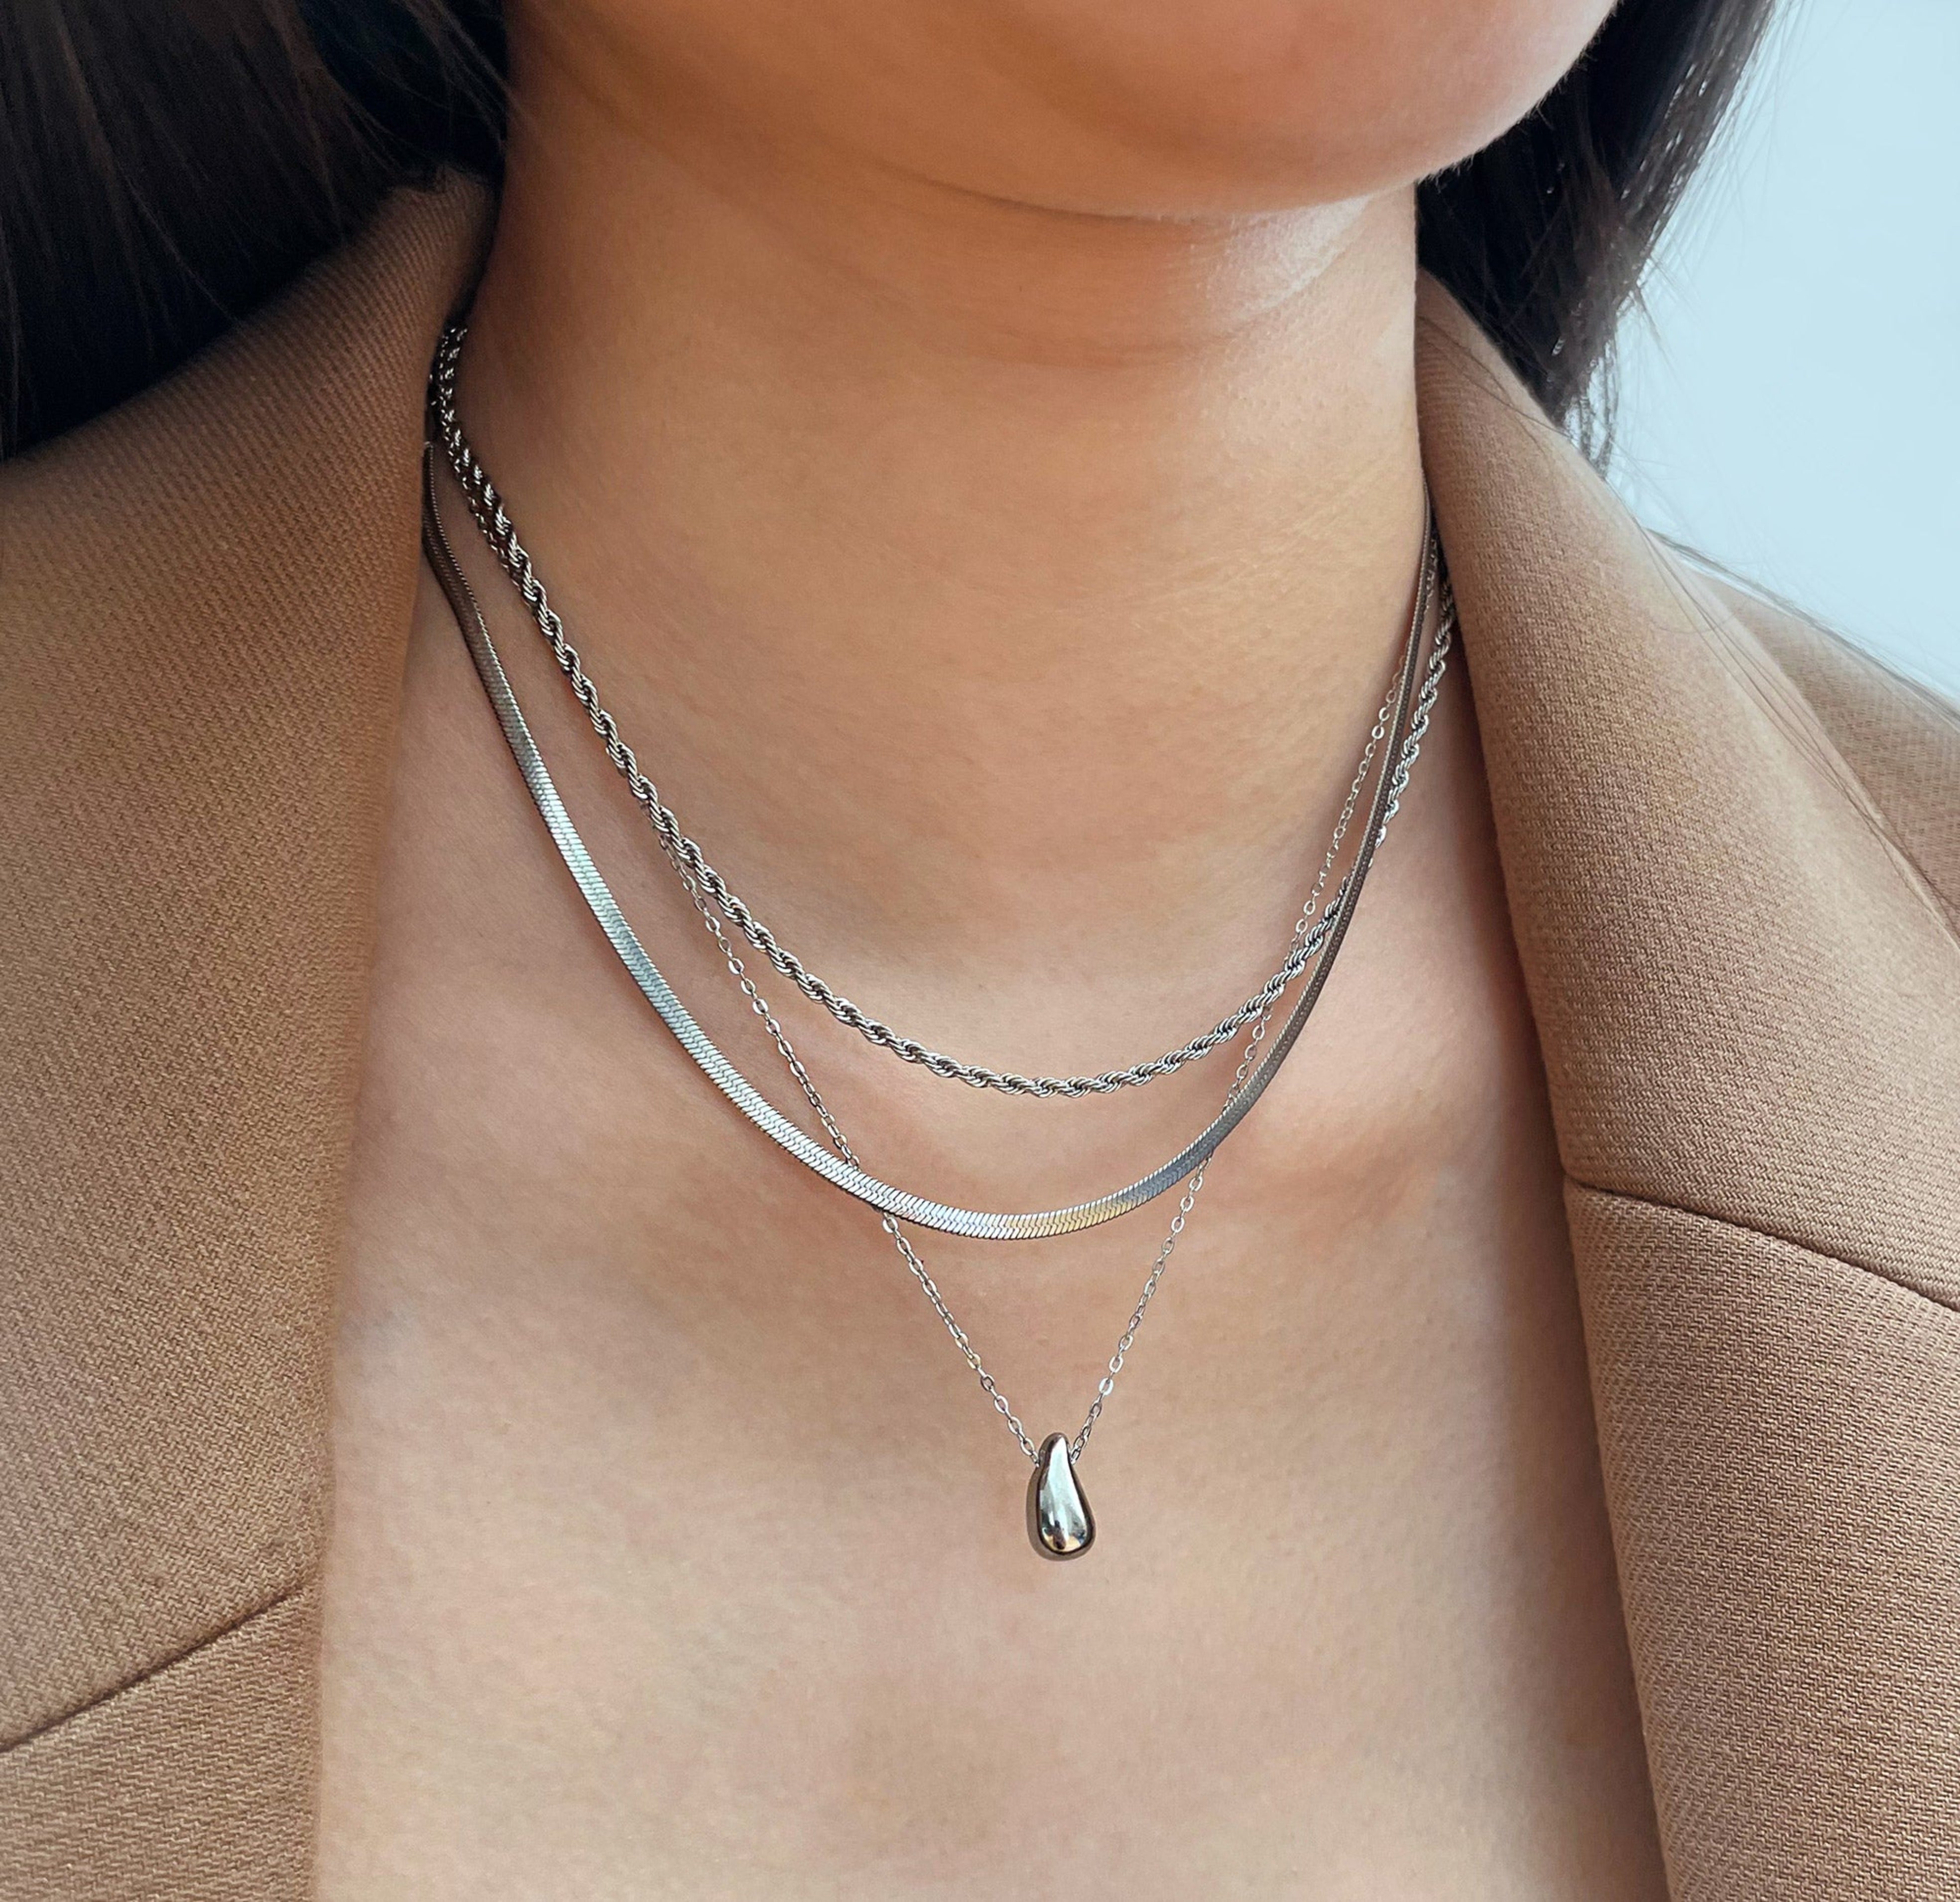 silver tear drop necklace waterproof jewelry